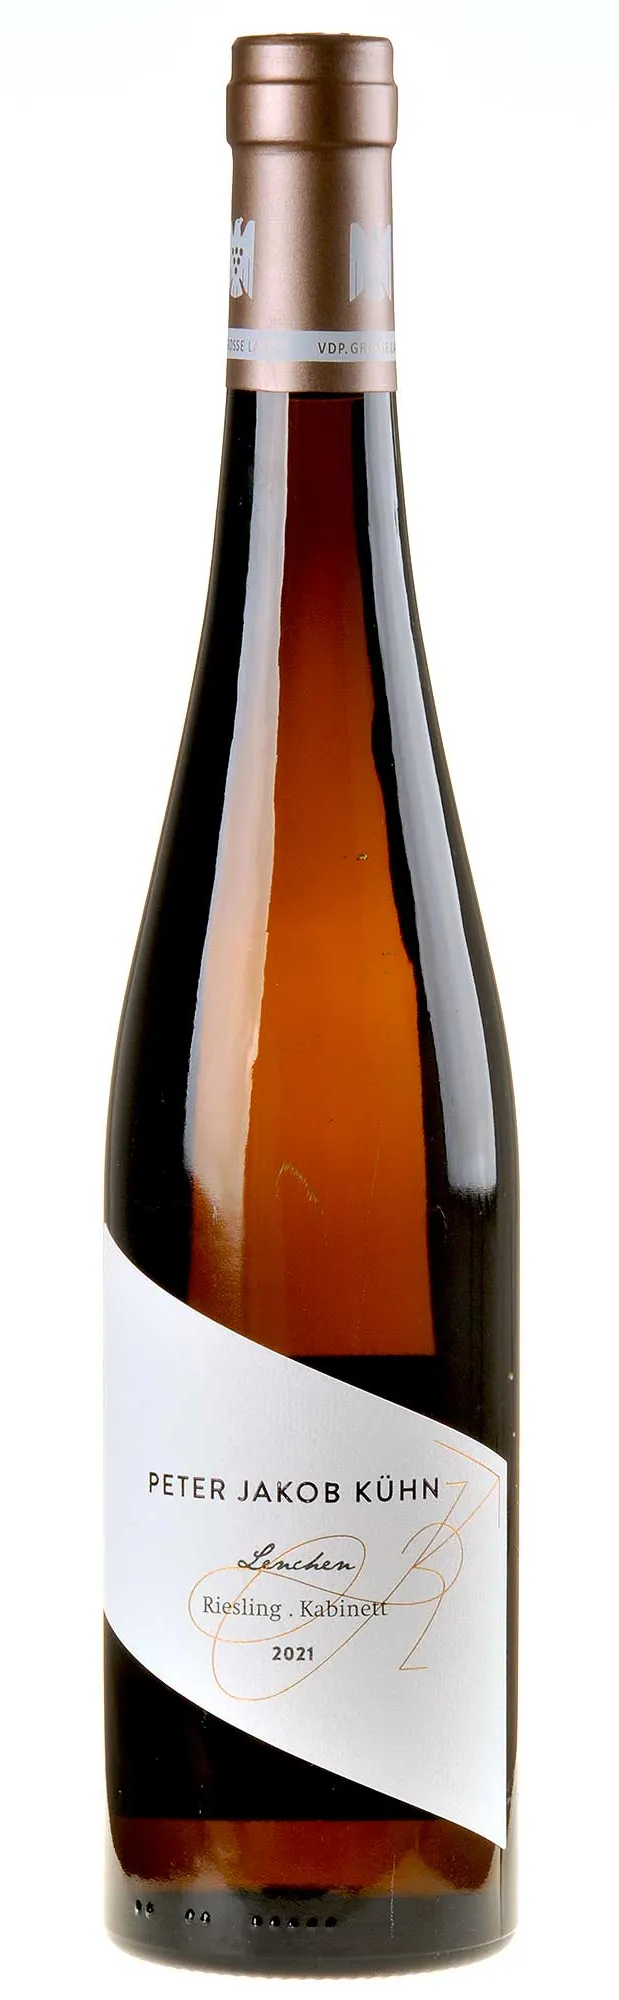 Bottle of Peter Jakob Kühn Lenchen Riesling Kabinettwith label visible